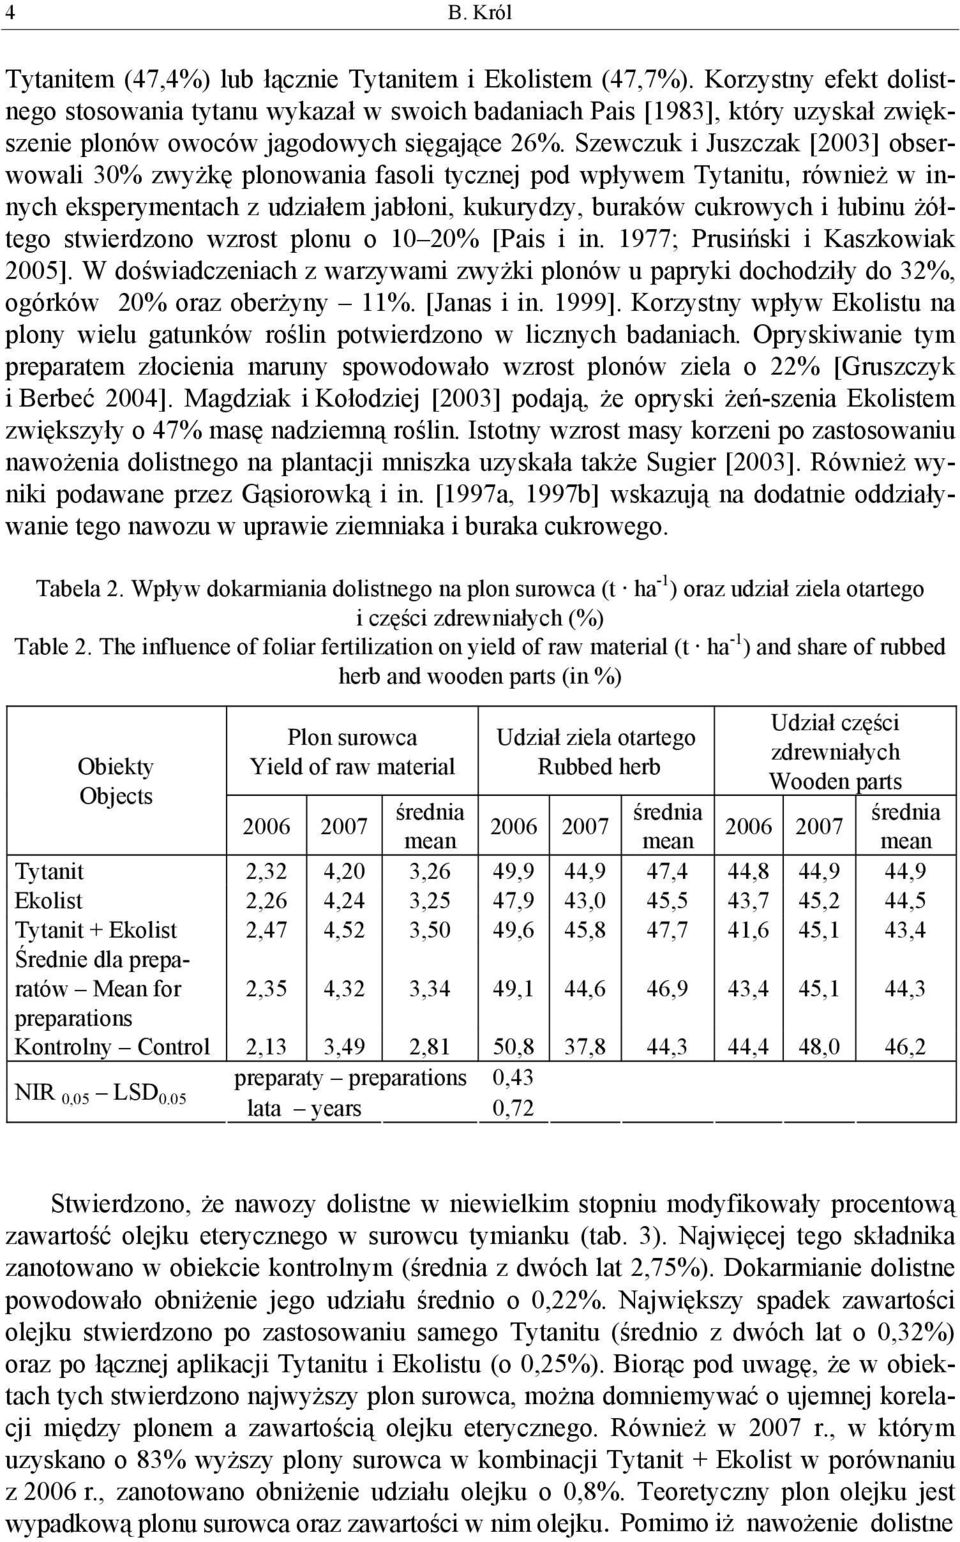 Szewczuk i Juszczak [2003] obserwowali 30% zwyżkę plonowania fasoli tycznej pod wpływem Tytanitu, również w innych eksperymentach z udziałem jabłoni, kukurydzy, buraków cukrowych i łubinu żółtego